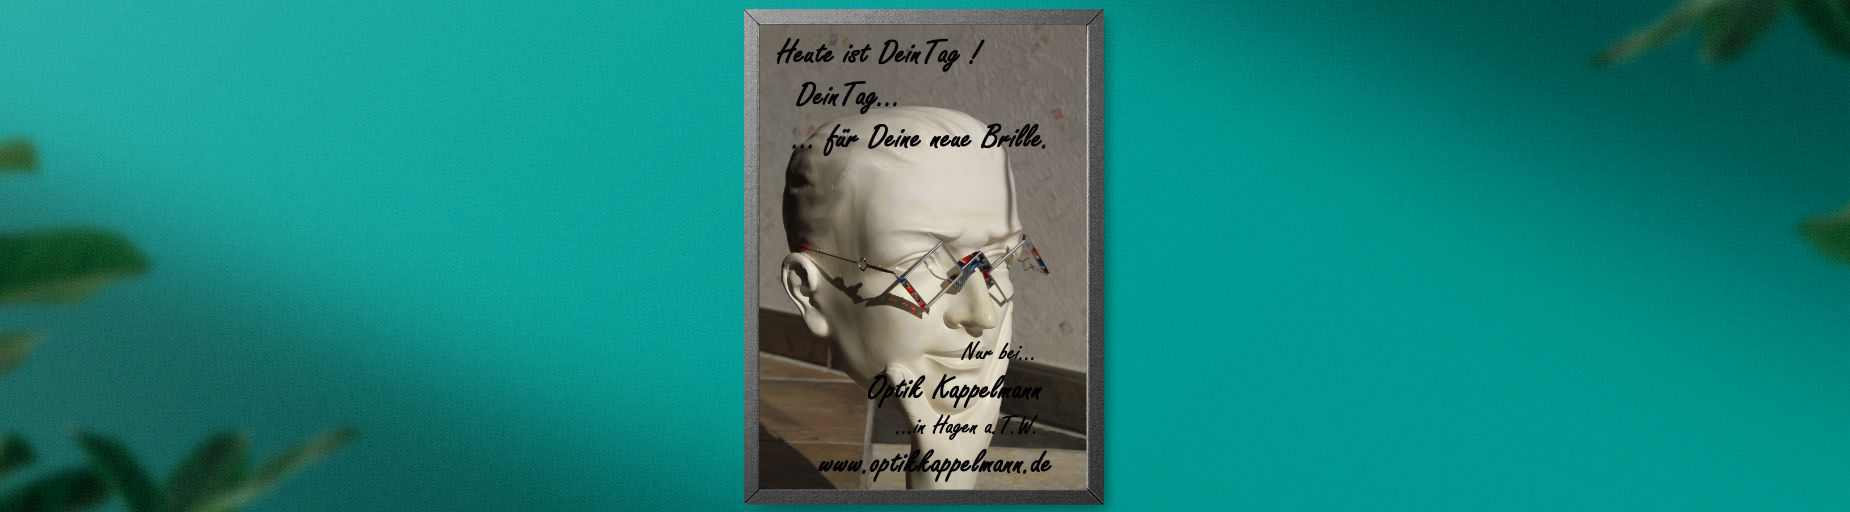 Büste mit Brille von Optik Kappelmann